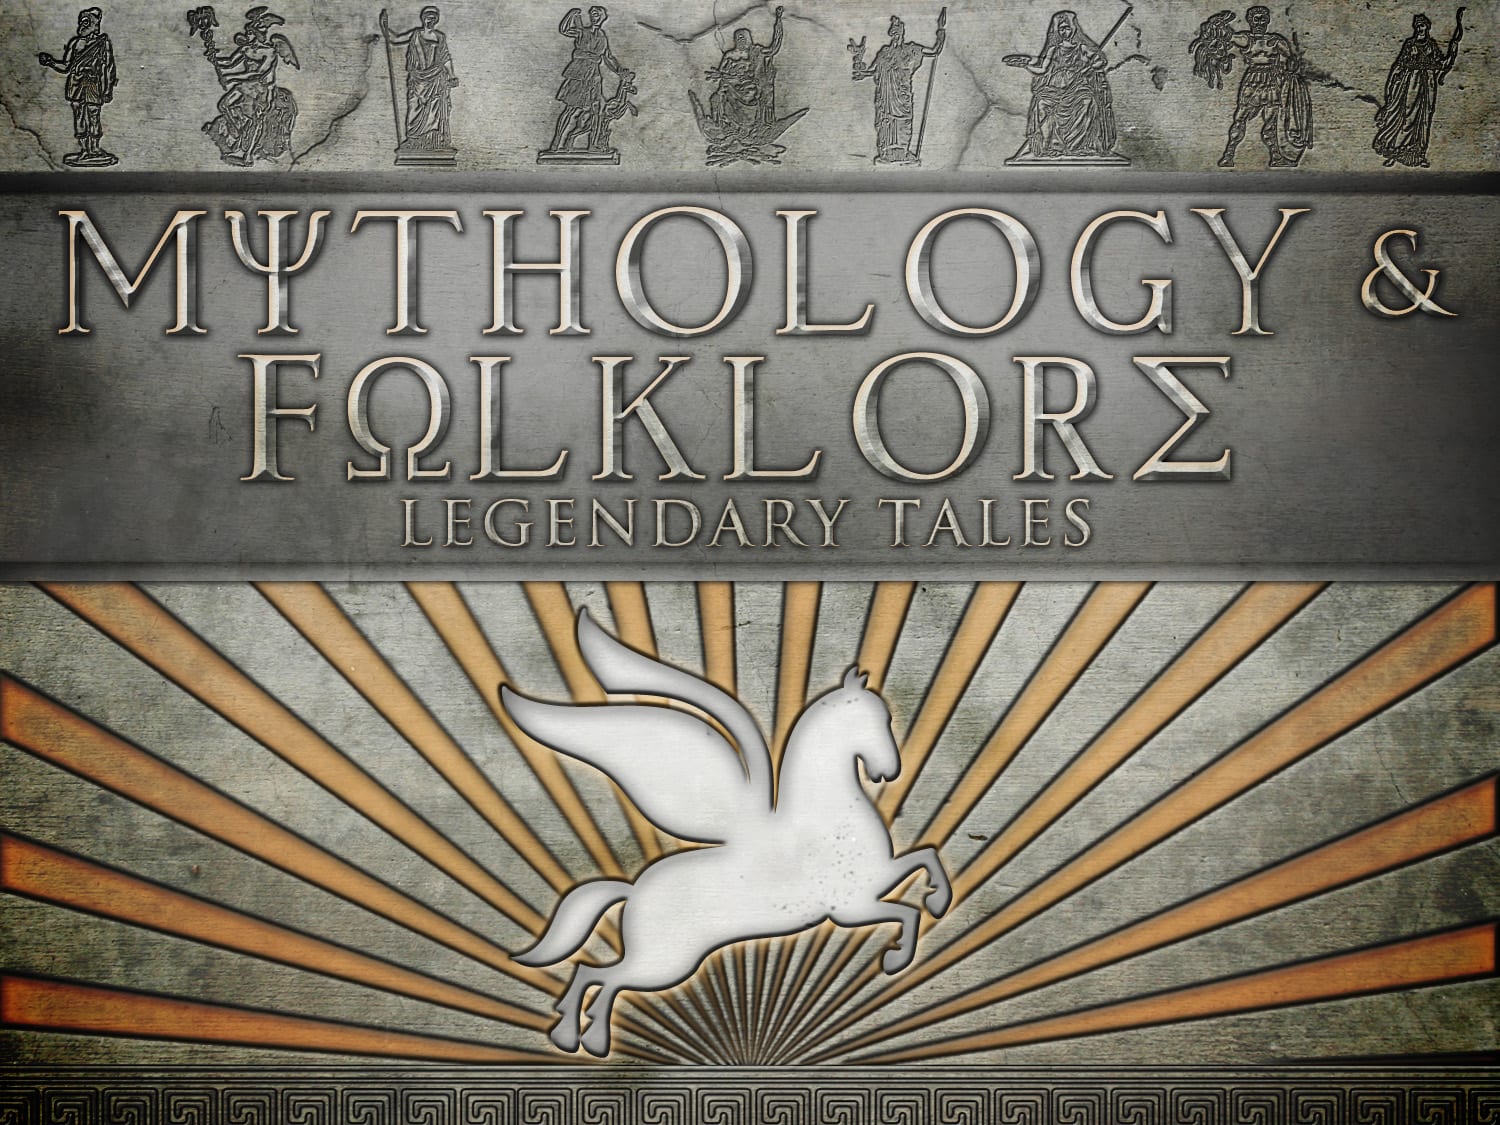 Mythology & Folklore